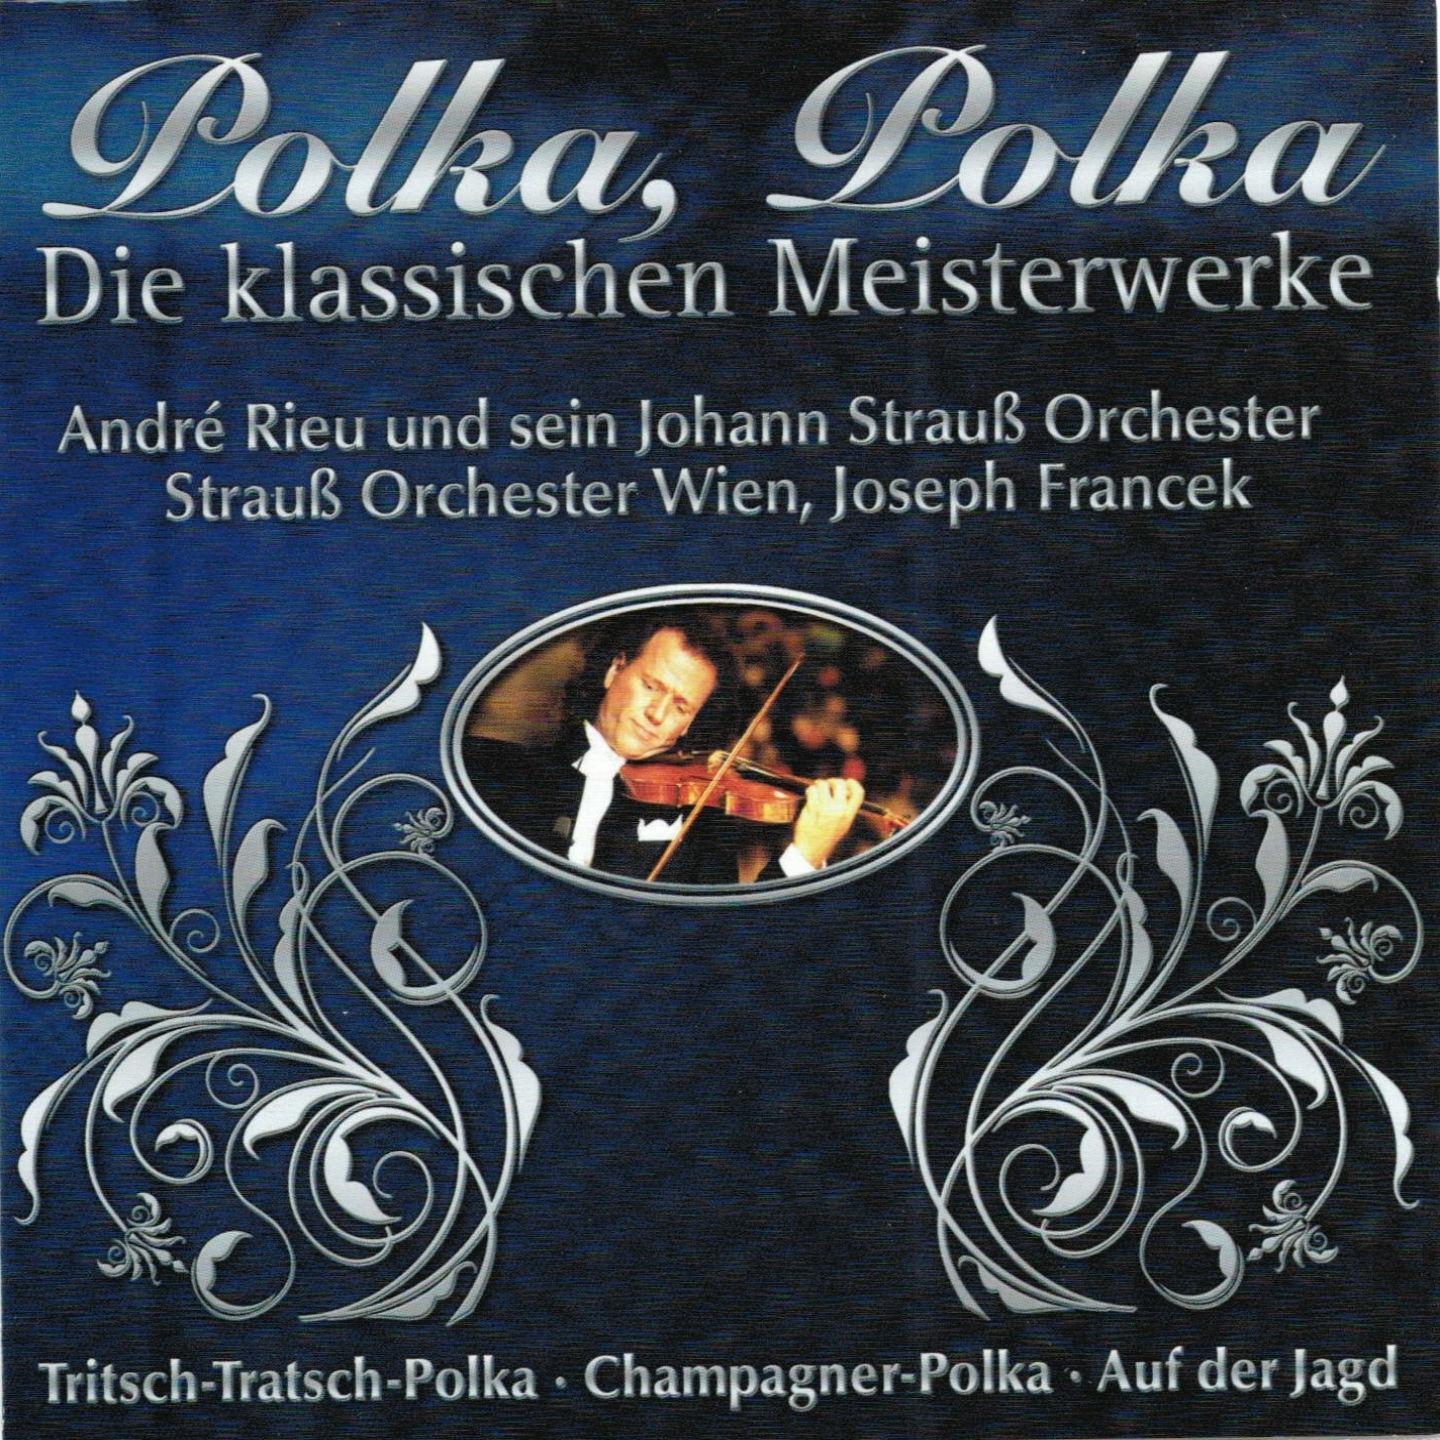 Strauss-Orchester Wien - Unter Donner und Blitz, Op. 324